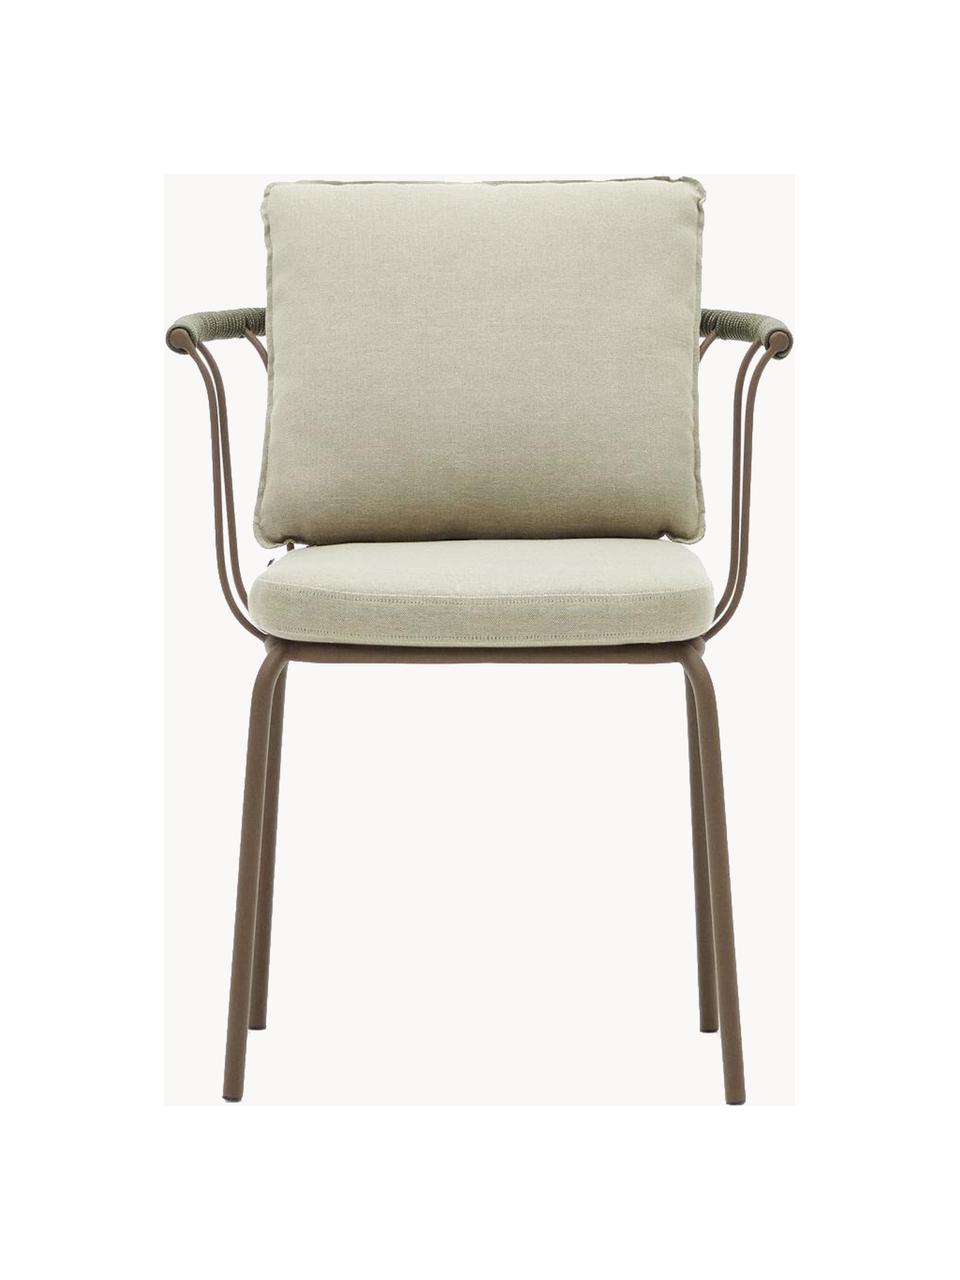 Ogrodowe krzesło z tapicerowanym siedziskiem Jay, Tapicerka: 100% poliester, Stelaż: metal malowany proszkowo, Beżowa tkanina, brązowy, S 59 x G 52 cm